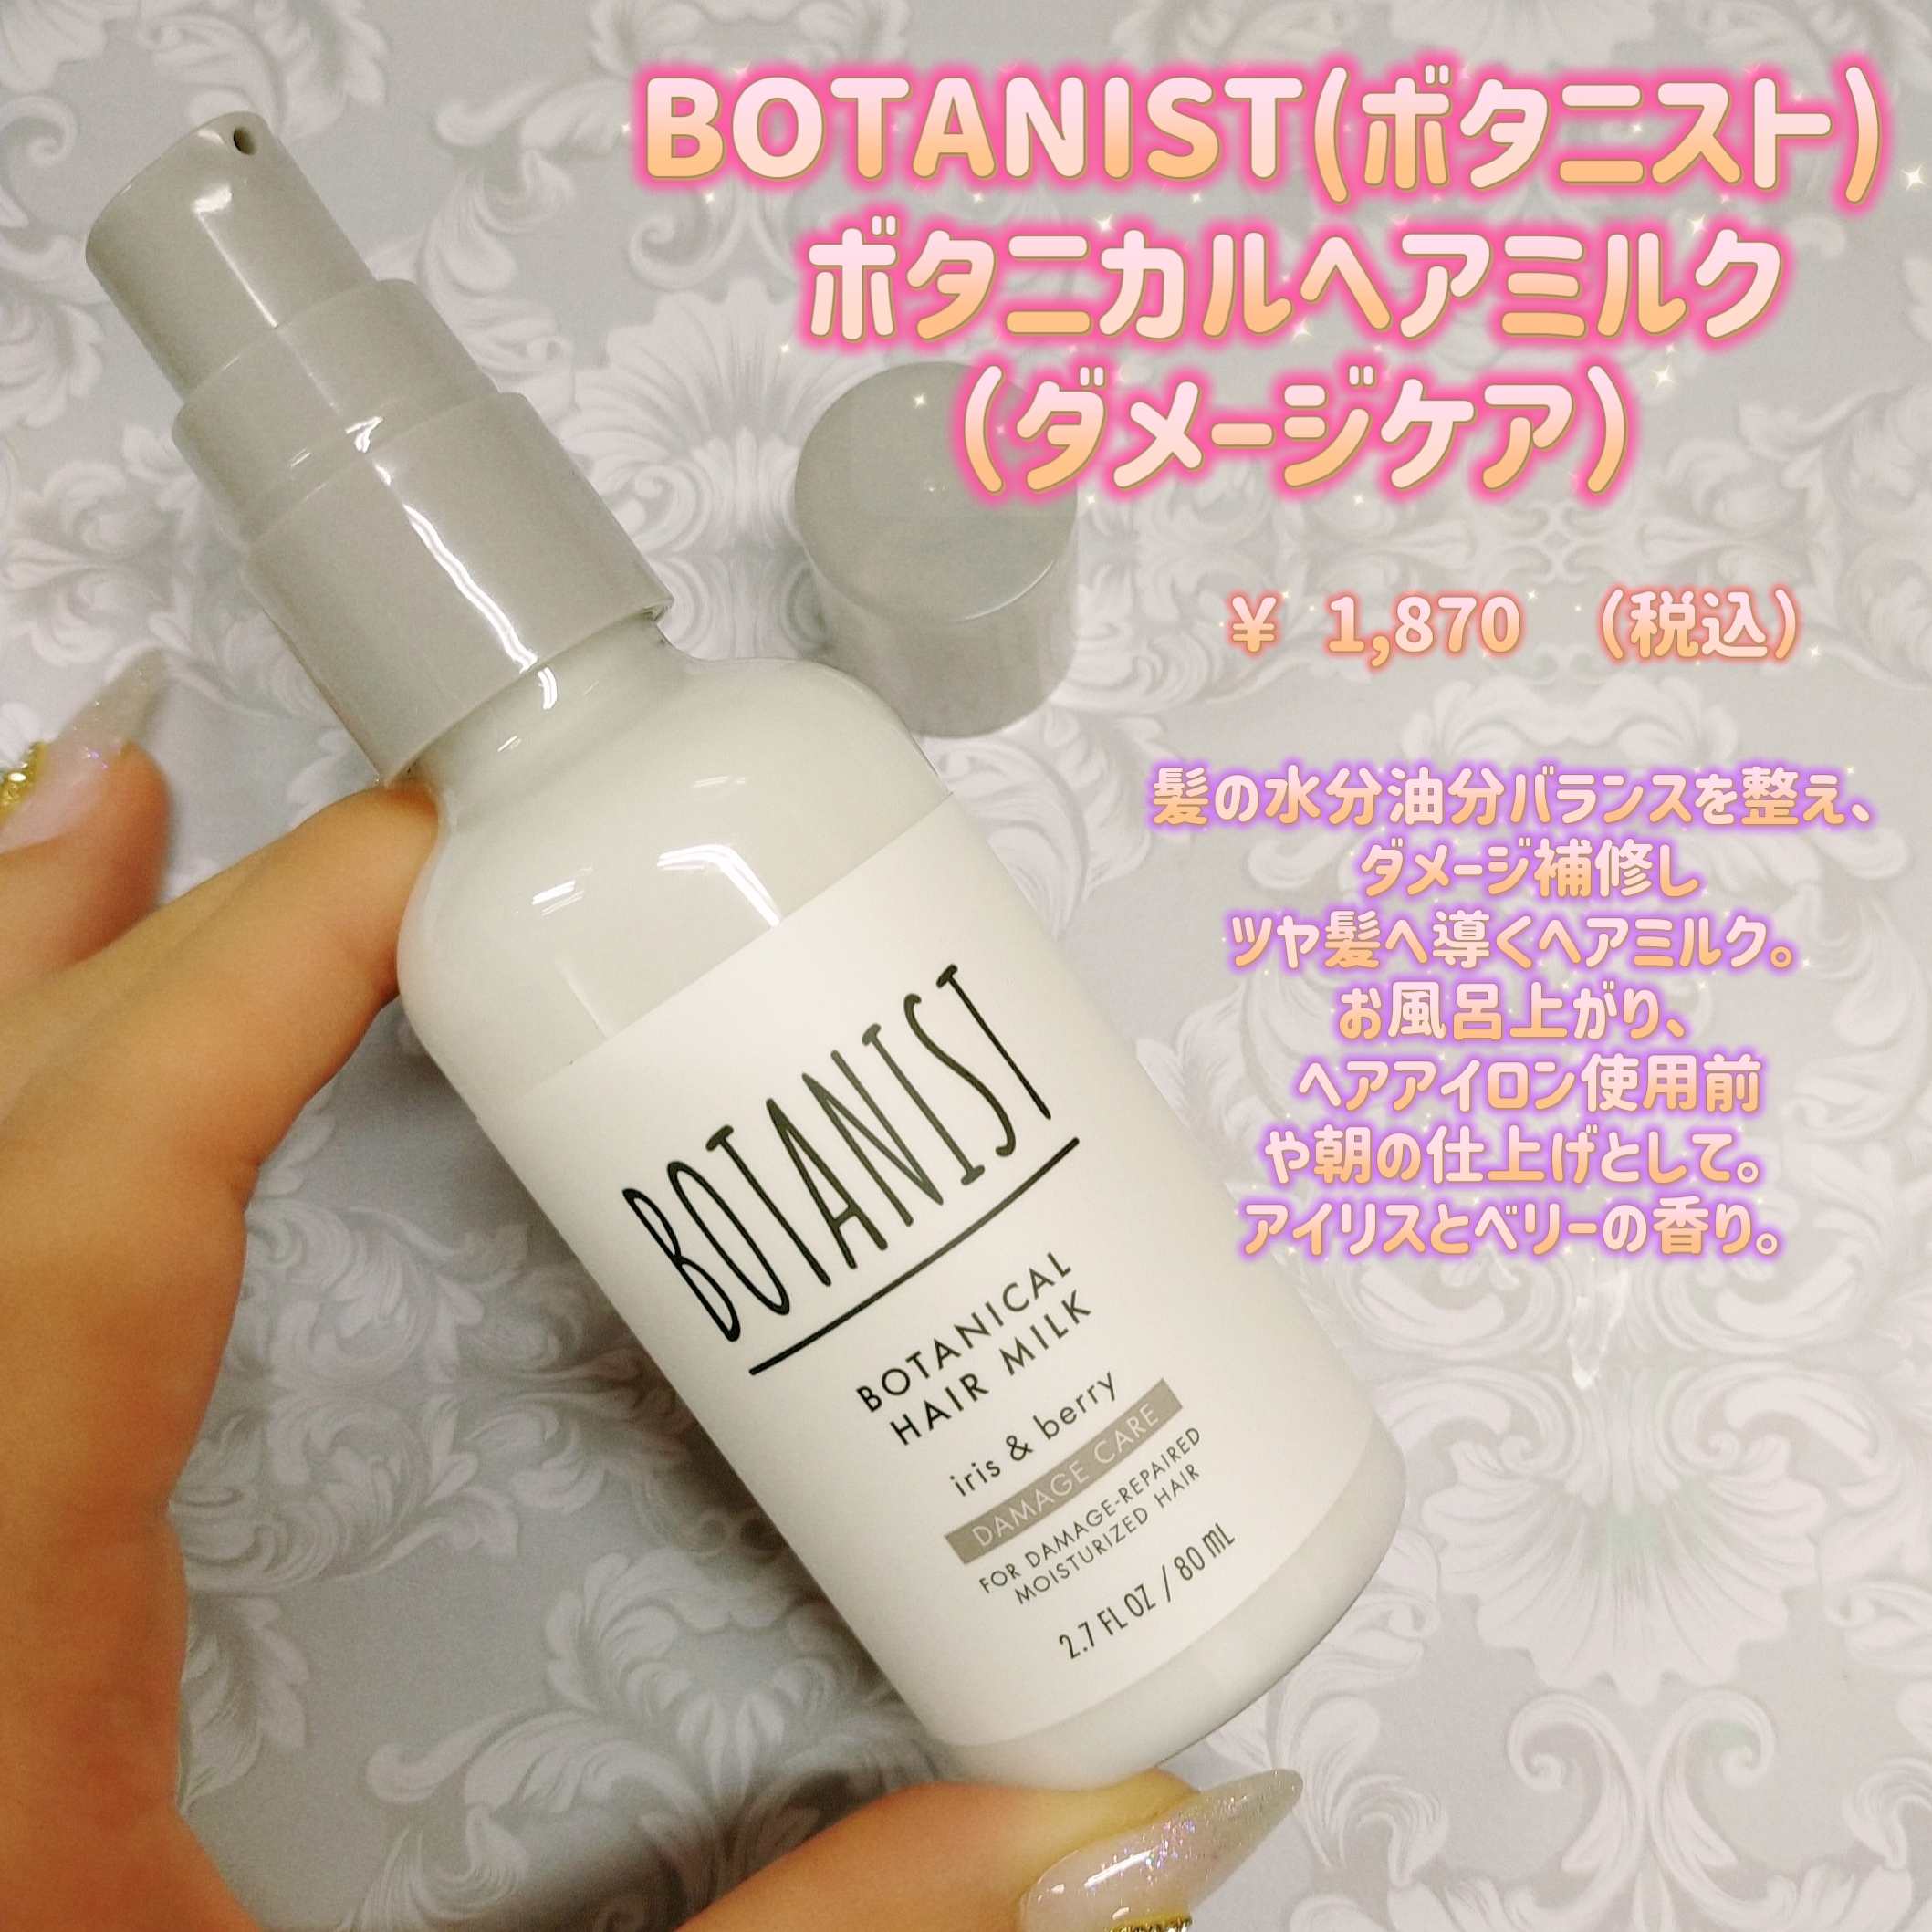 BOTANIST(ボタニスト) ボタニカルヘアミルク ダメージケアの良い点・メリットに関するみこさんの口コミ画像1